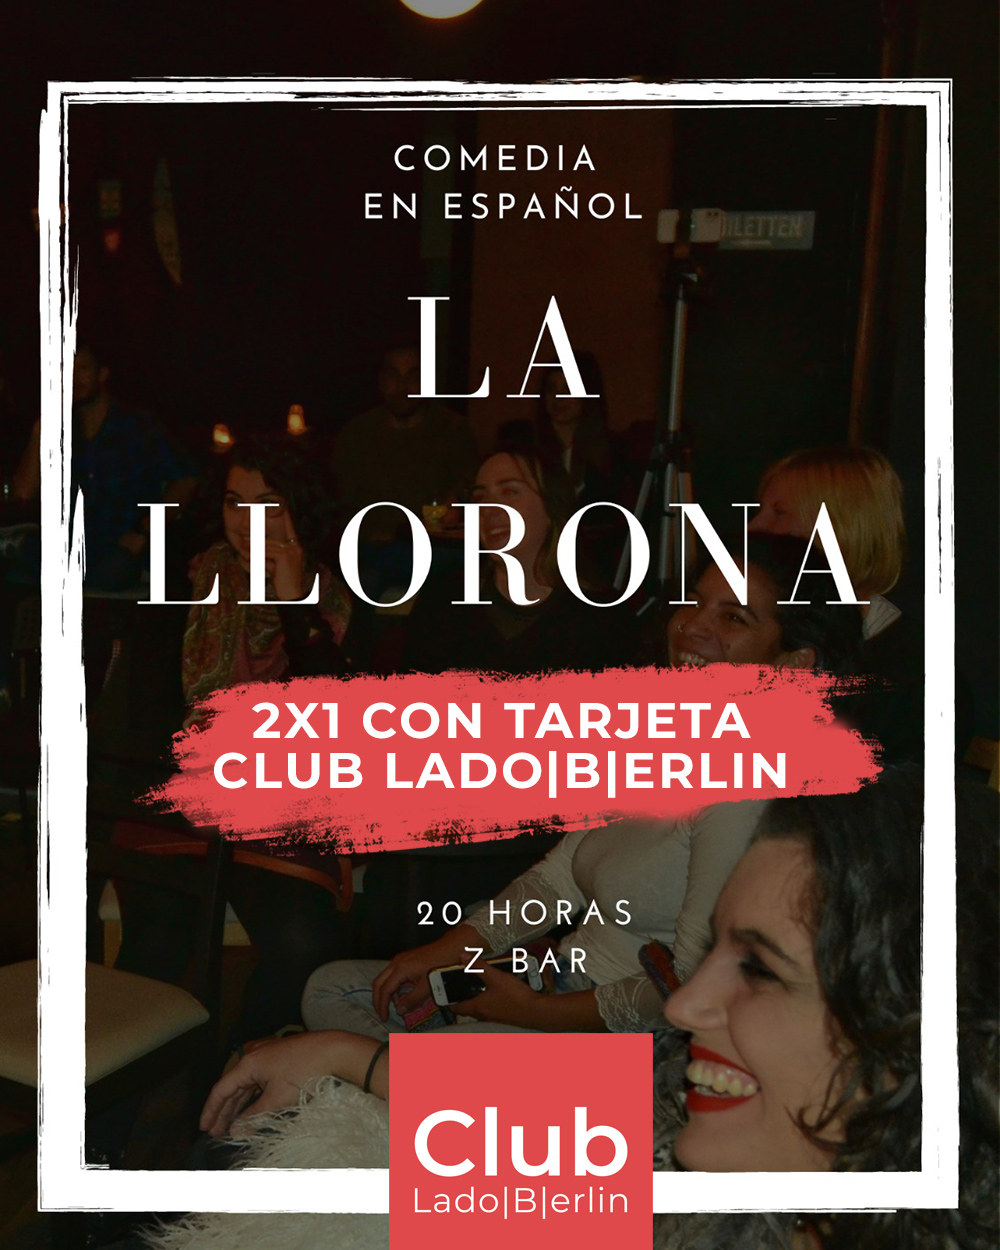 La Llorona Club Lado|B|erlin.